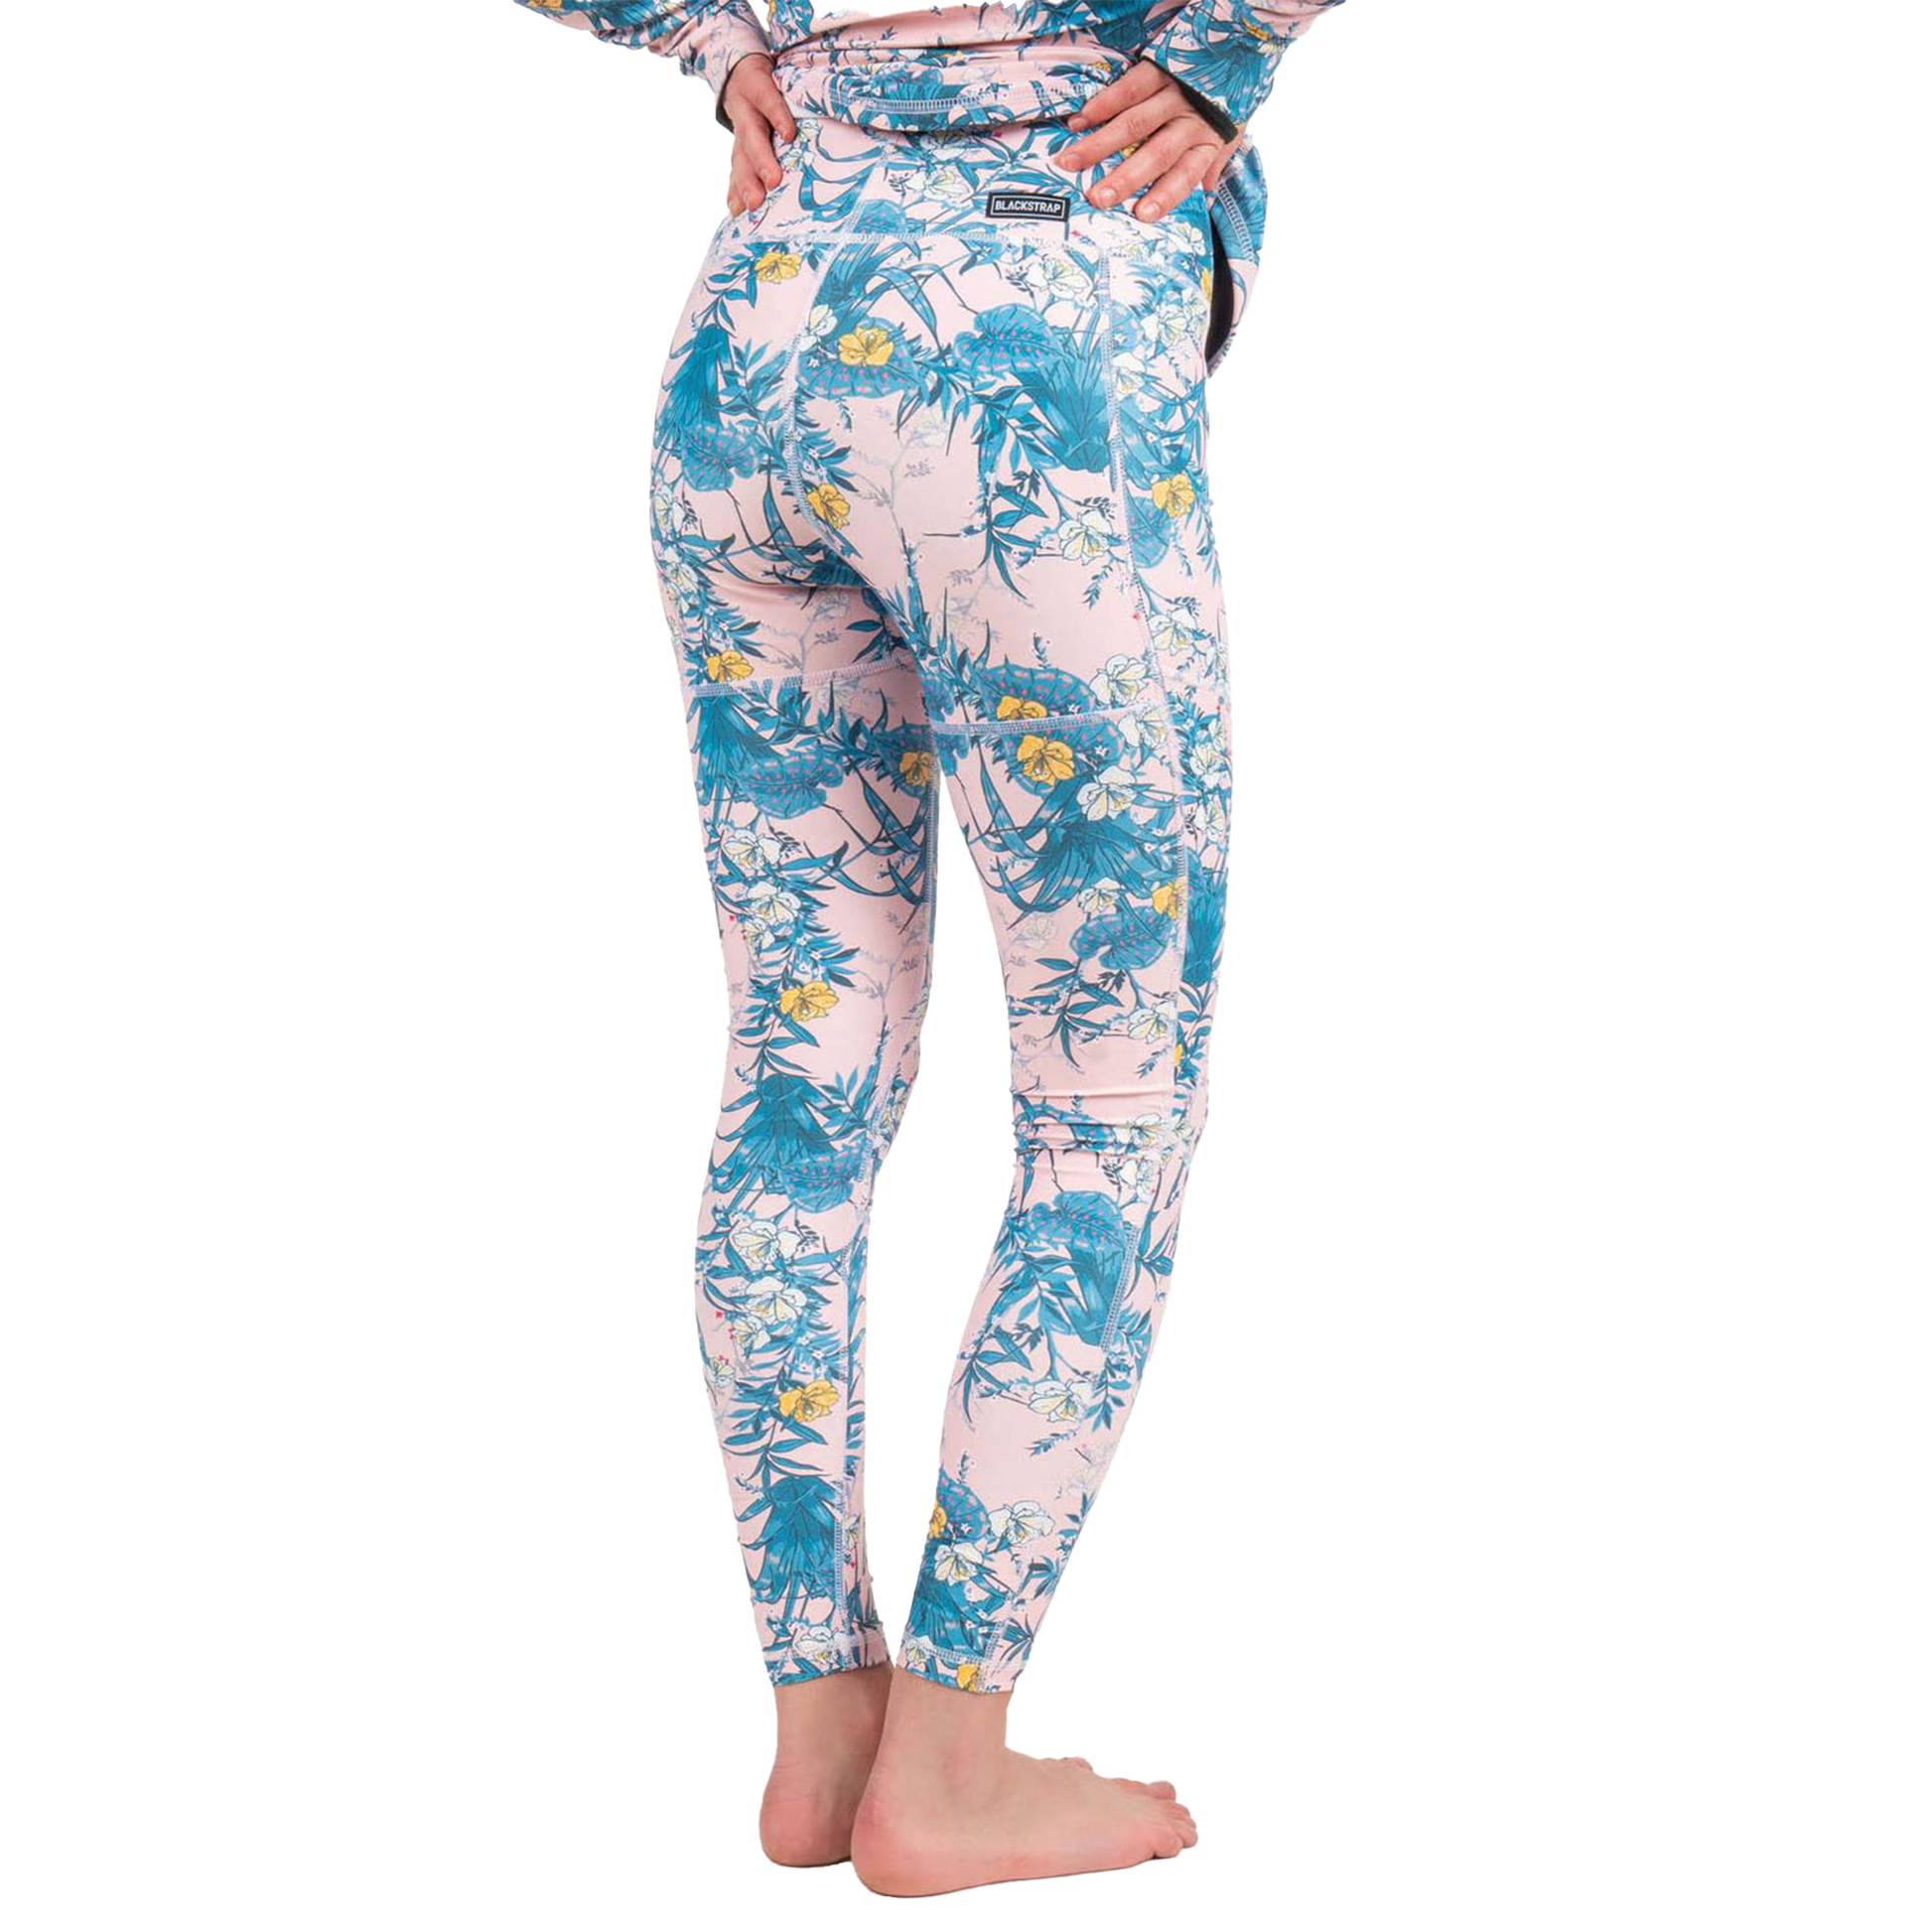 Blackstrap Women's Cloudchaser Baselayer Pant Floral Zen Base Layer Pants